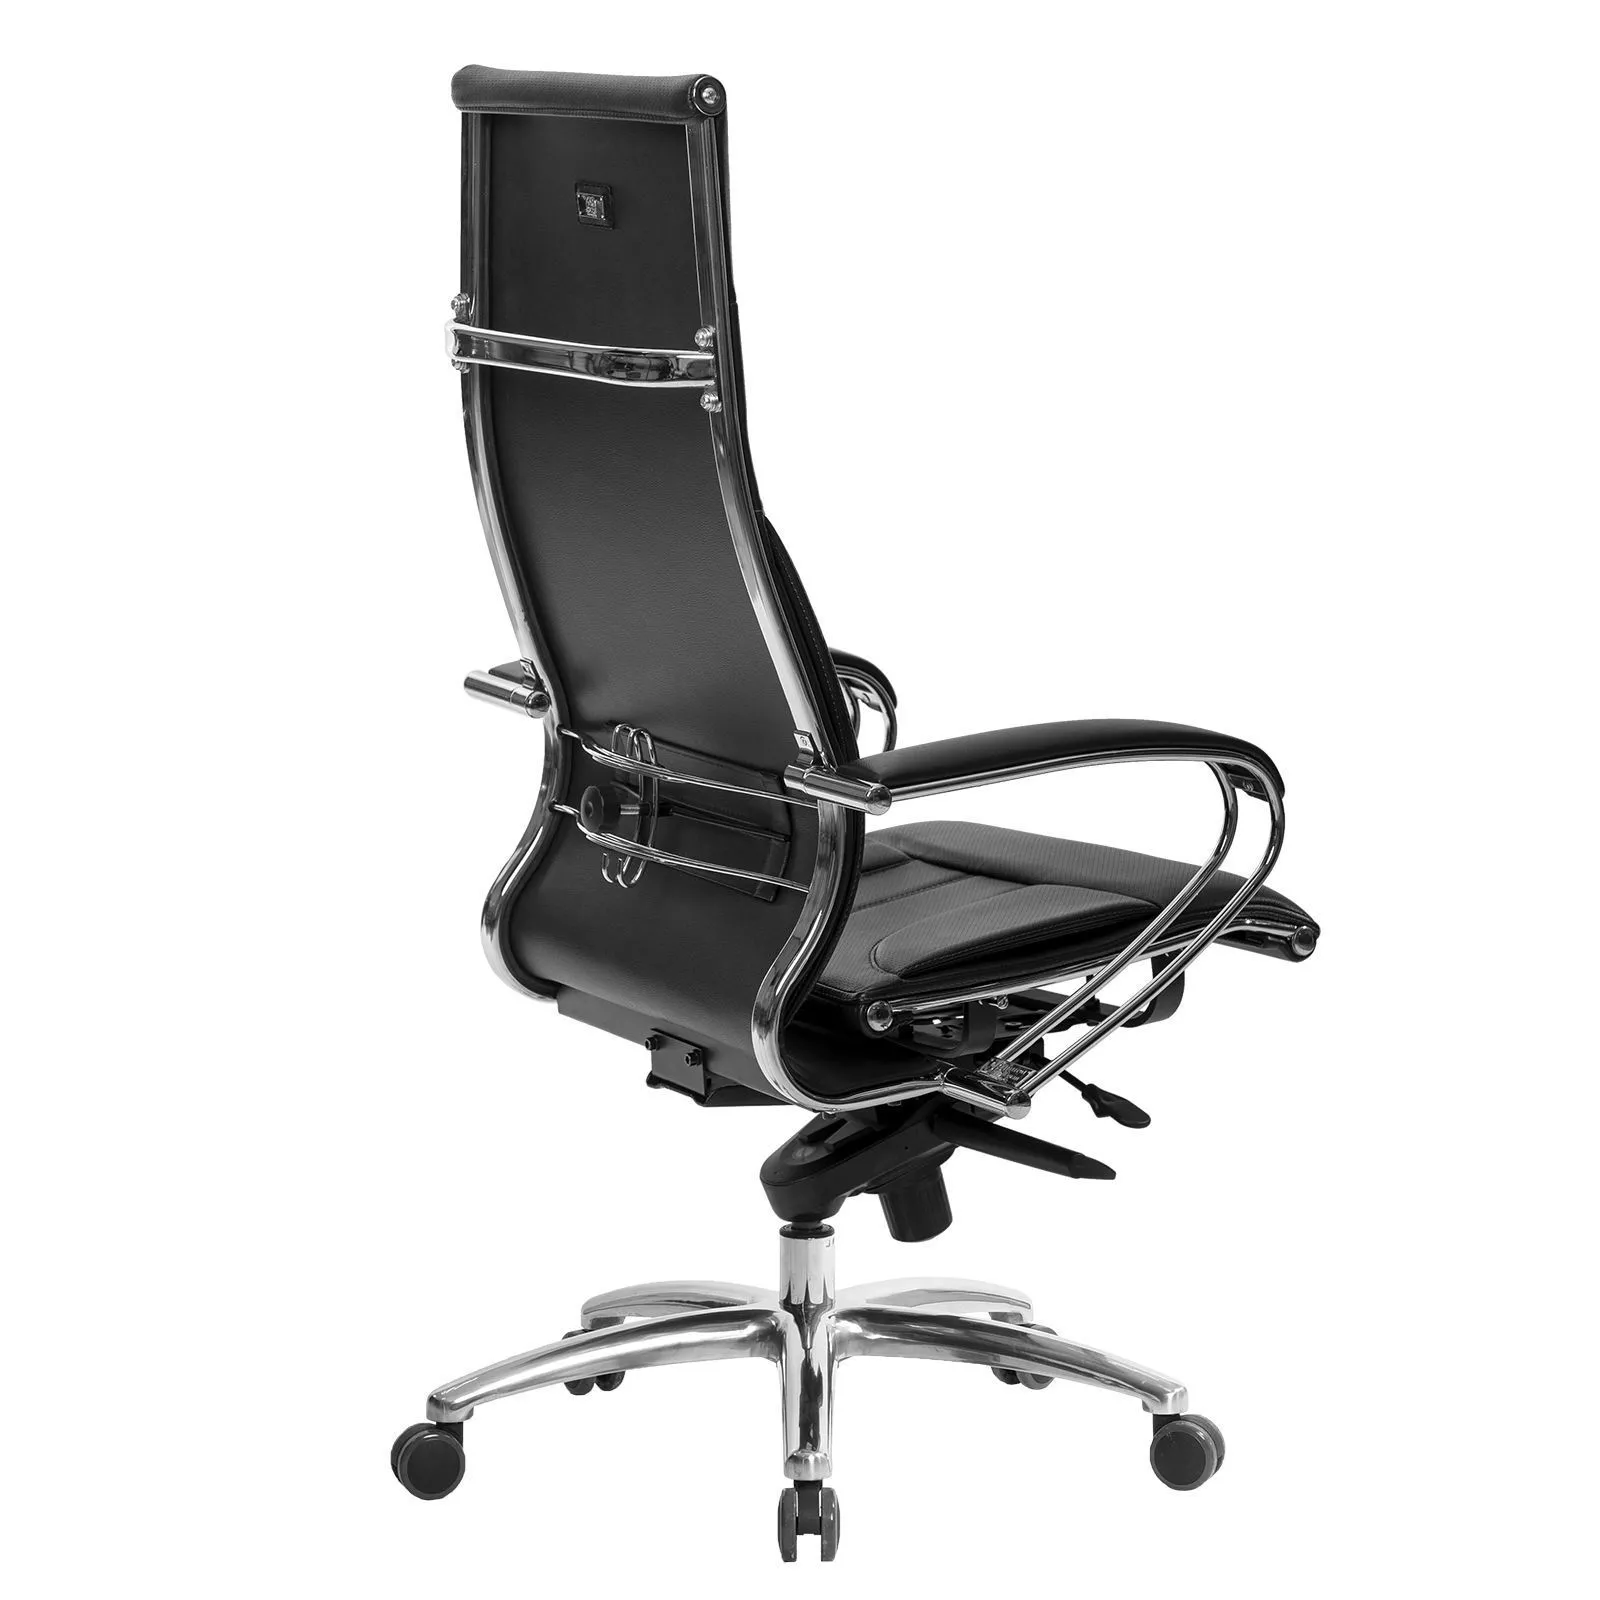 Кресло для руководителя SAMURAI LUX MPES Черный (черная строчка)